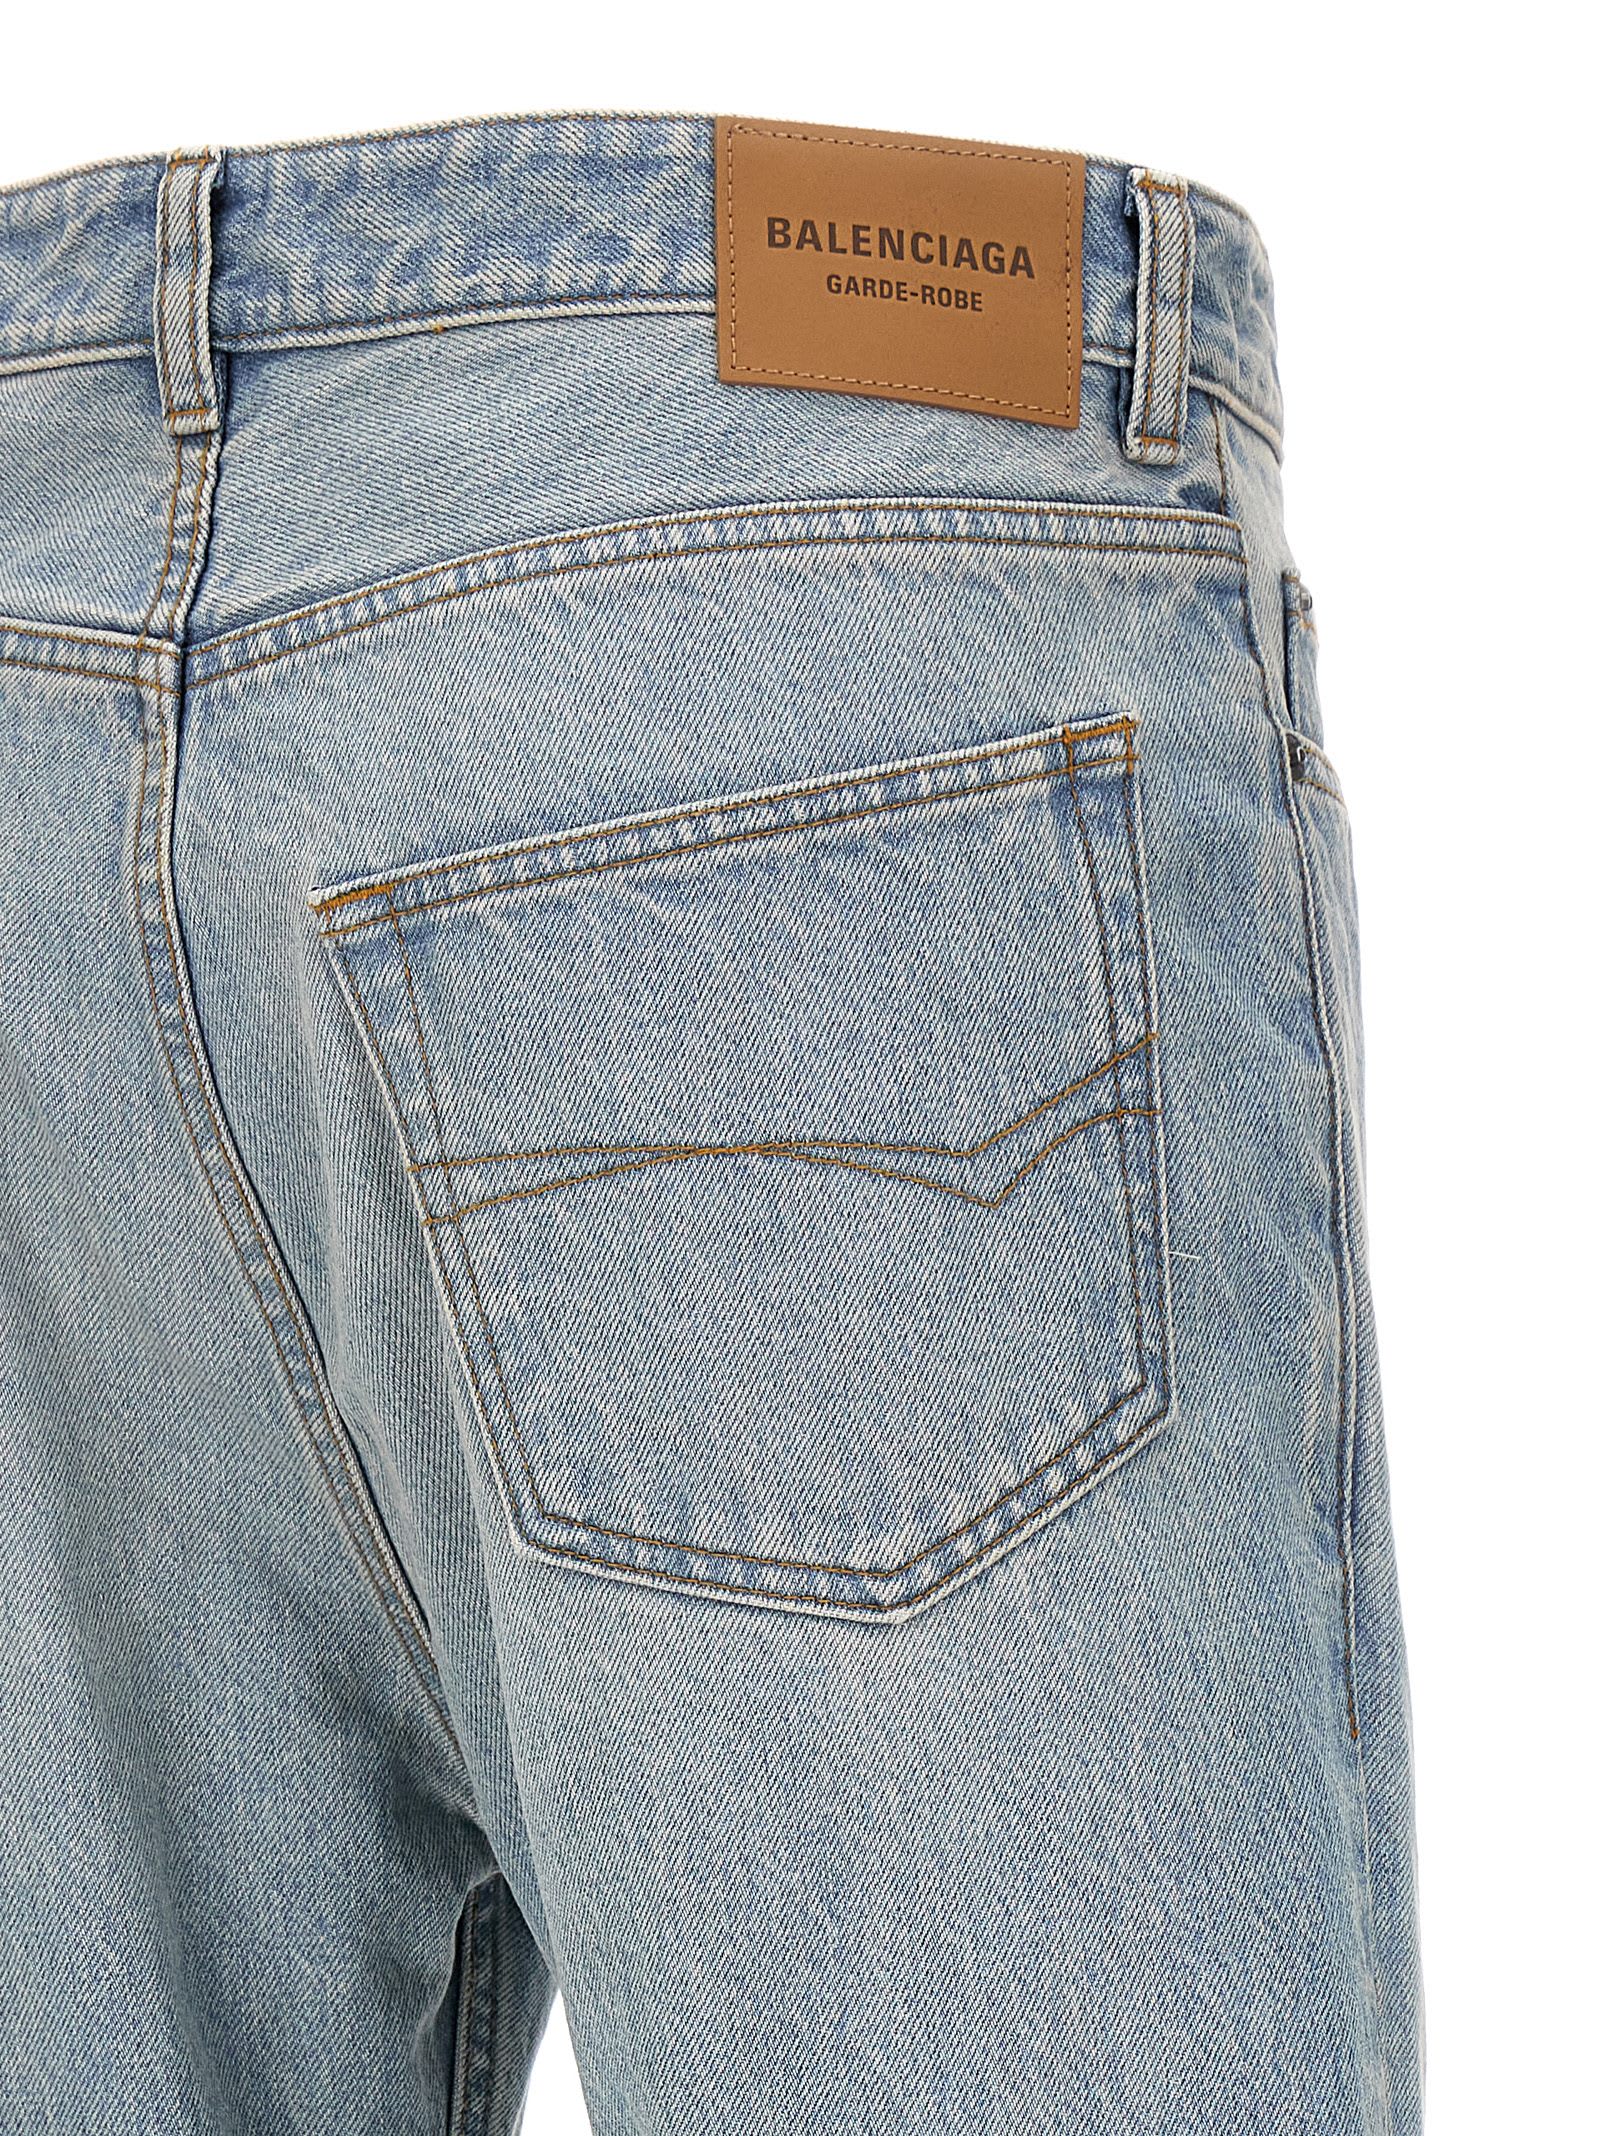 Shop Balenciaga Flared Jeans In Light Indigo/madder